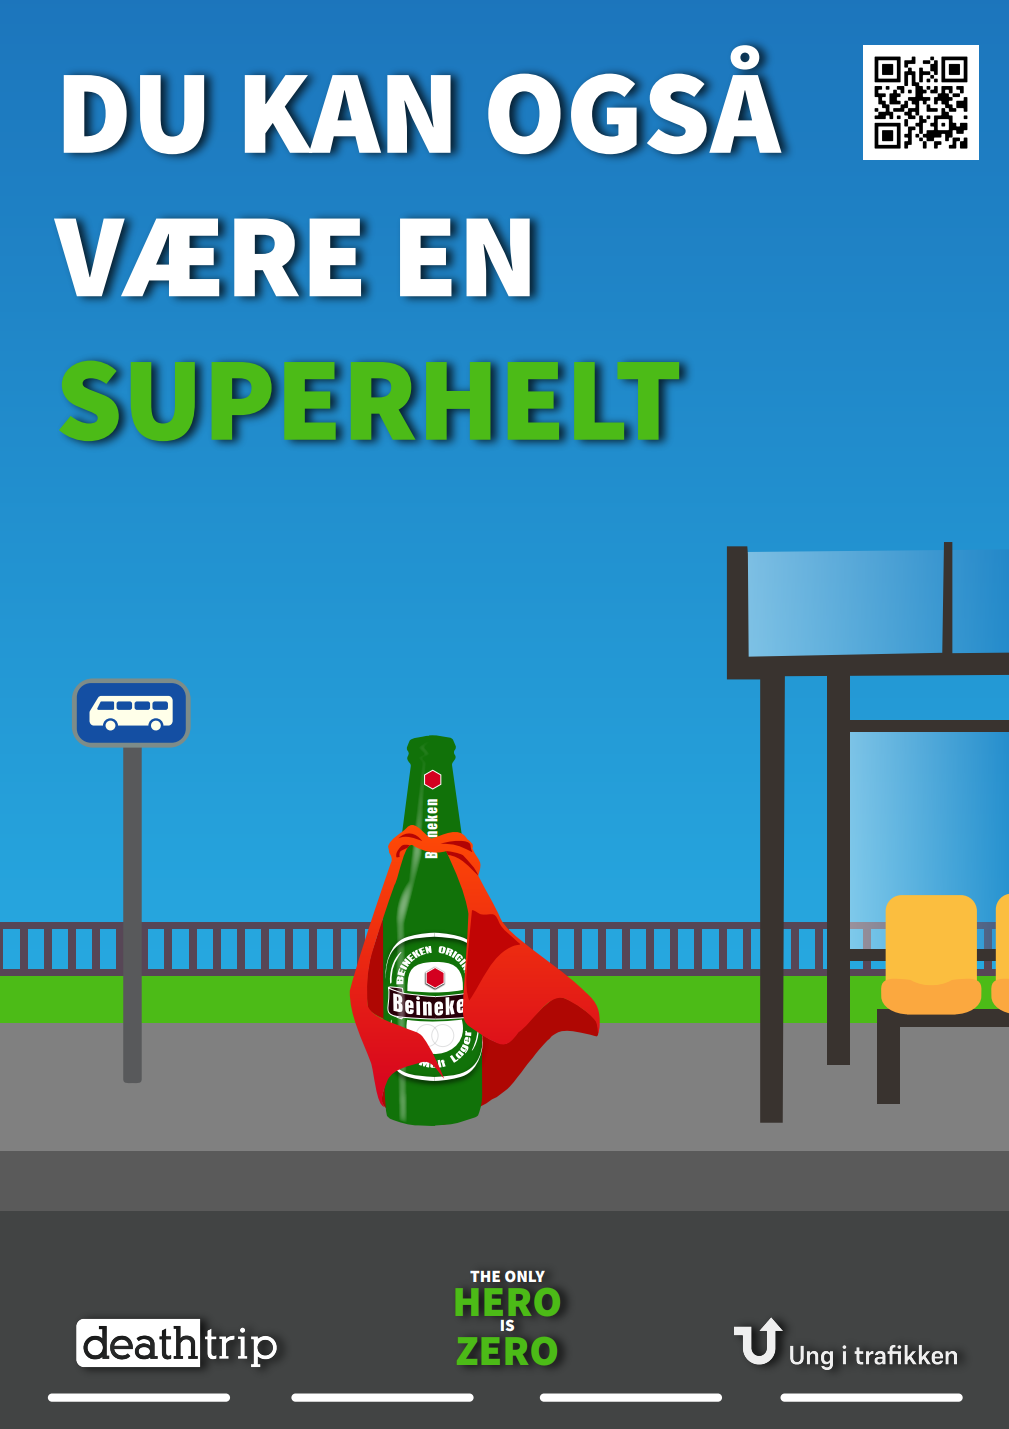 En ølflaske venter på bussen. Ølflasken har en rød kappe på seg. Teksten "Du kan også være en superhelt" vises over.